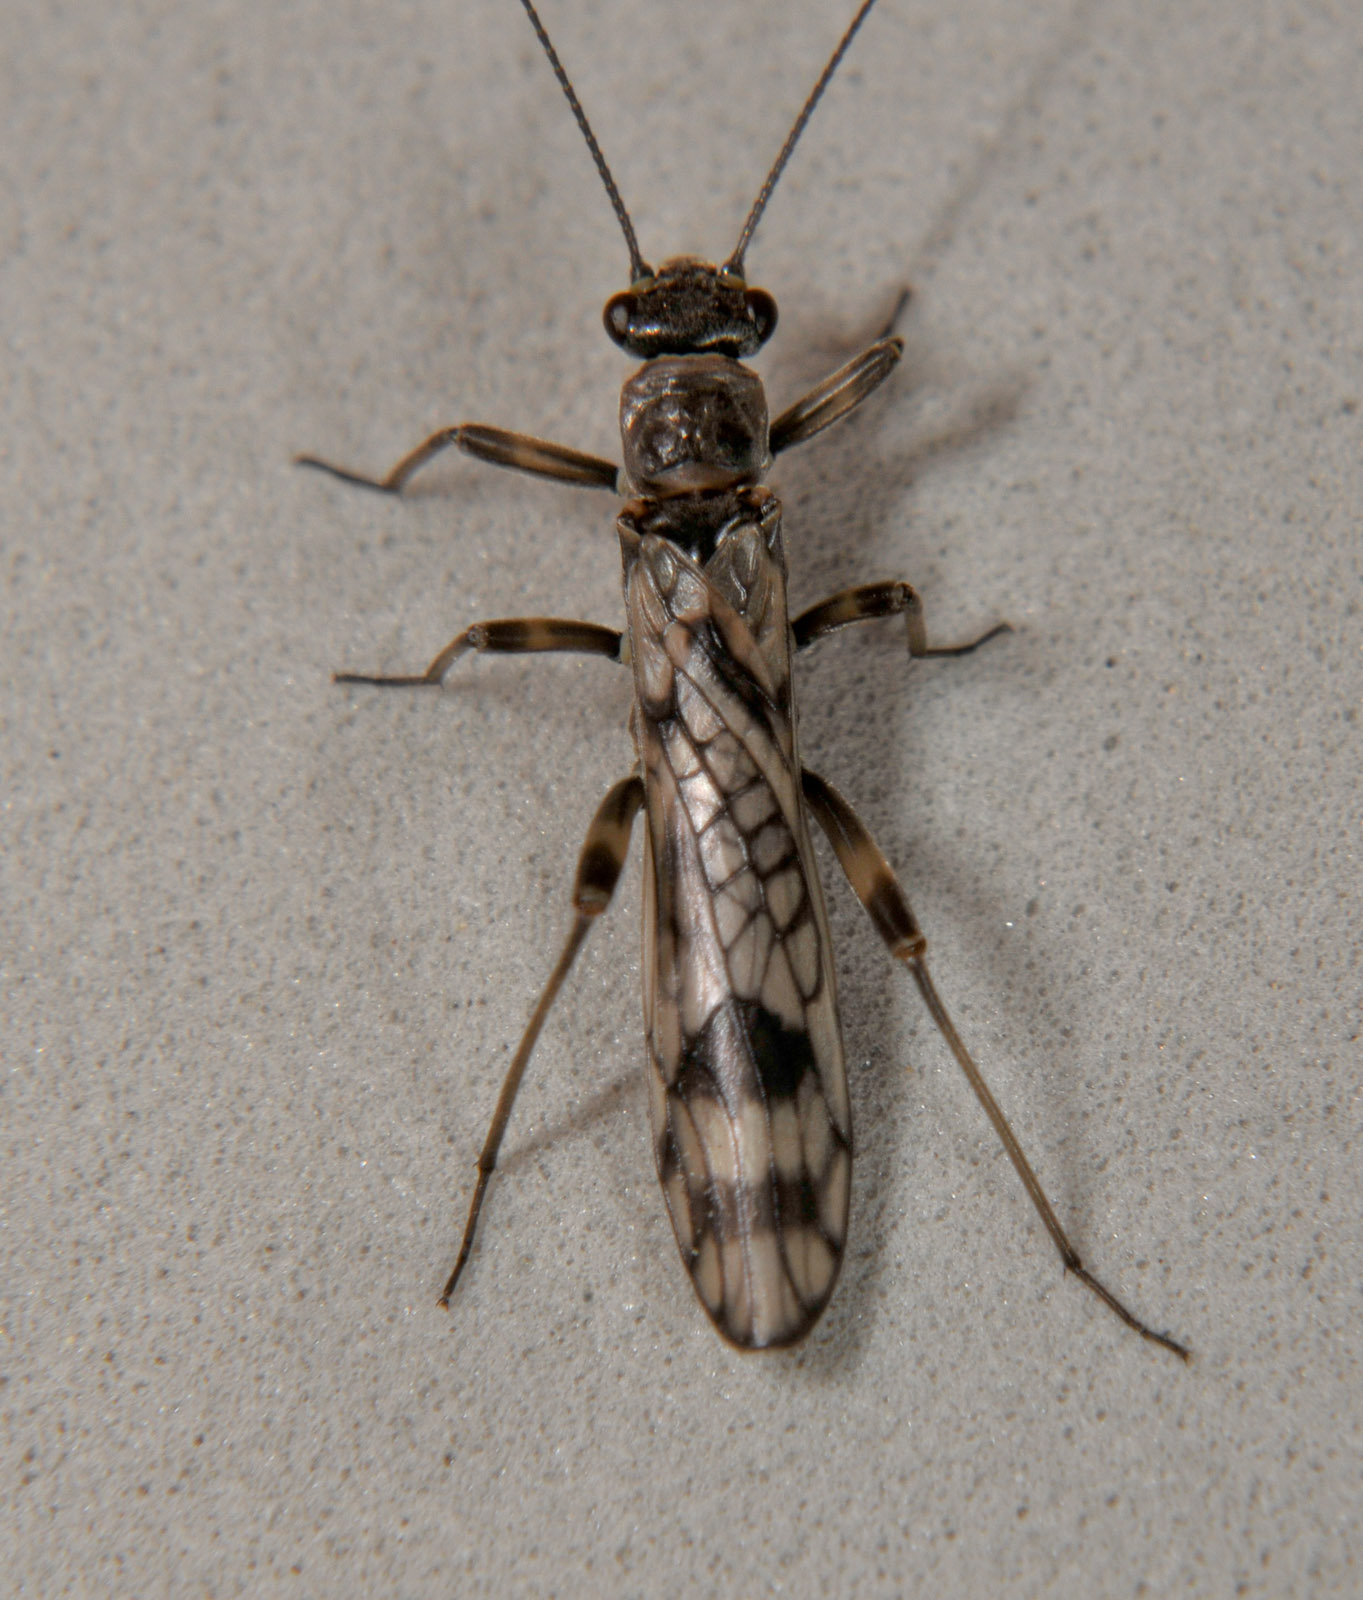 Female Zapada columbiana (Tiny Winter Black) Stonefly Adult from the N. Fk Touchet River in Washington